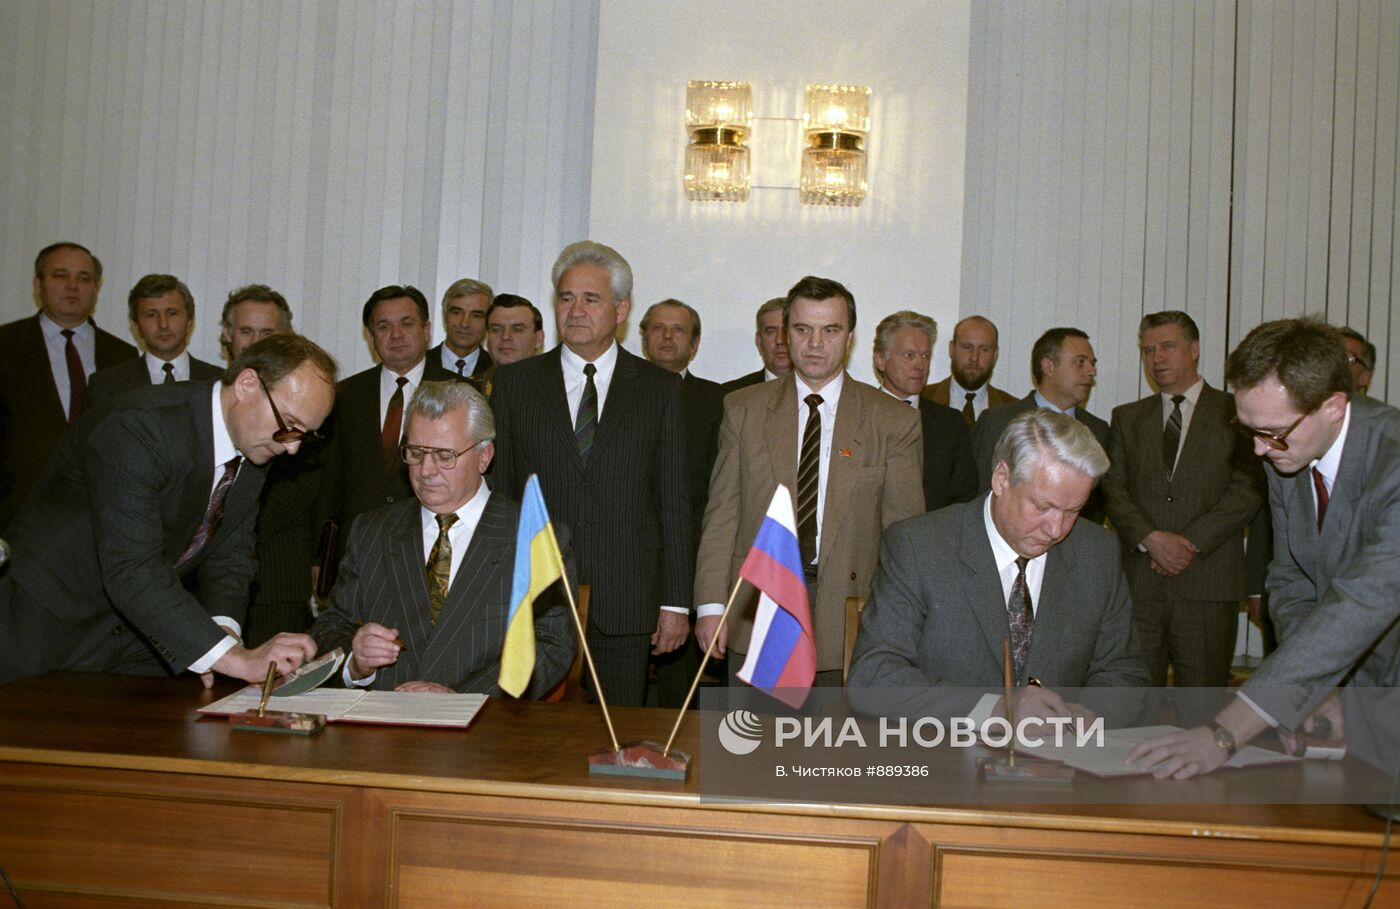 Подписание Договора о сотрудничестве между Россией и Украиной